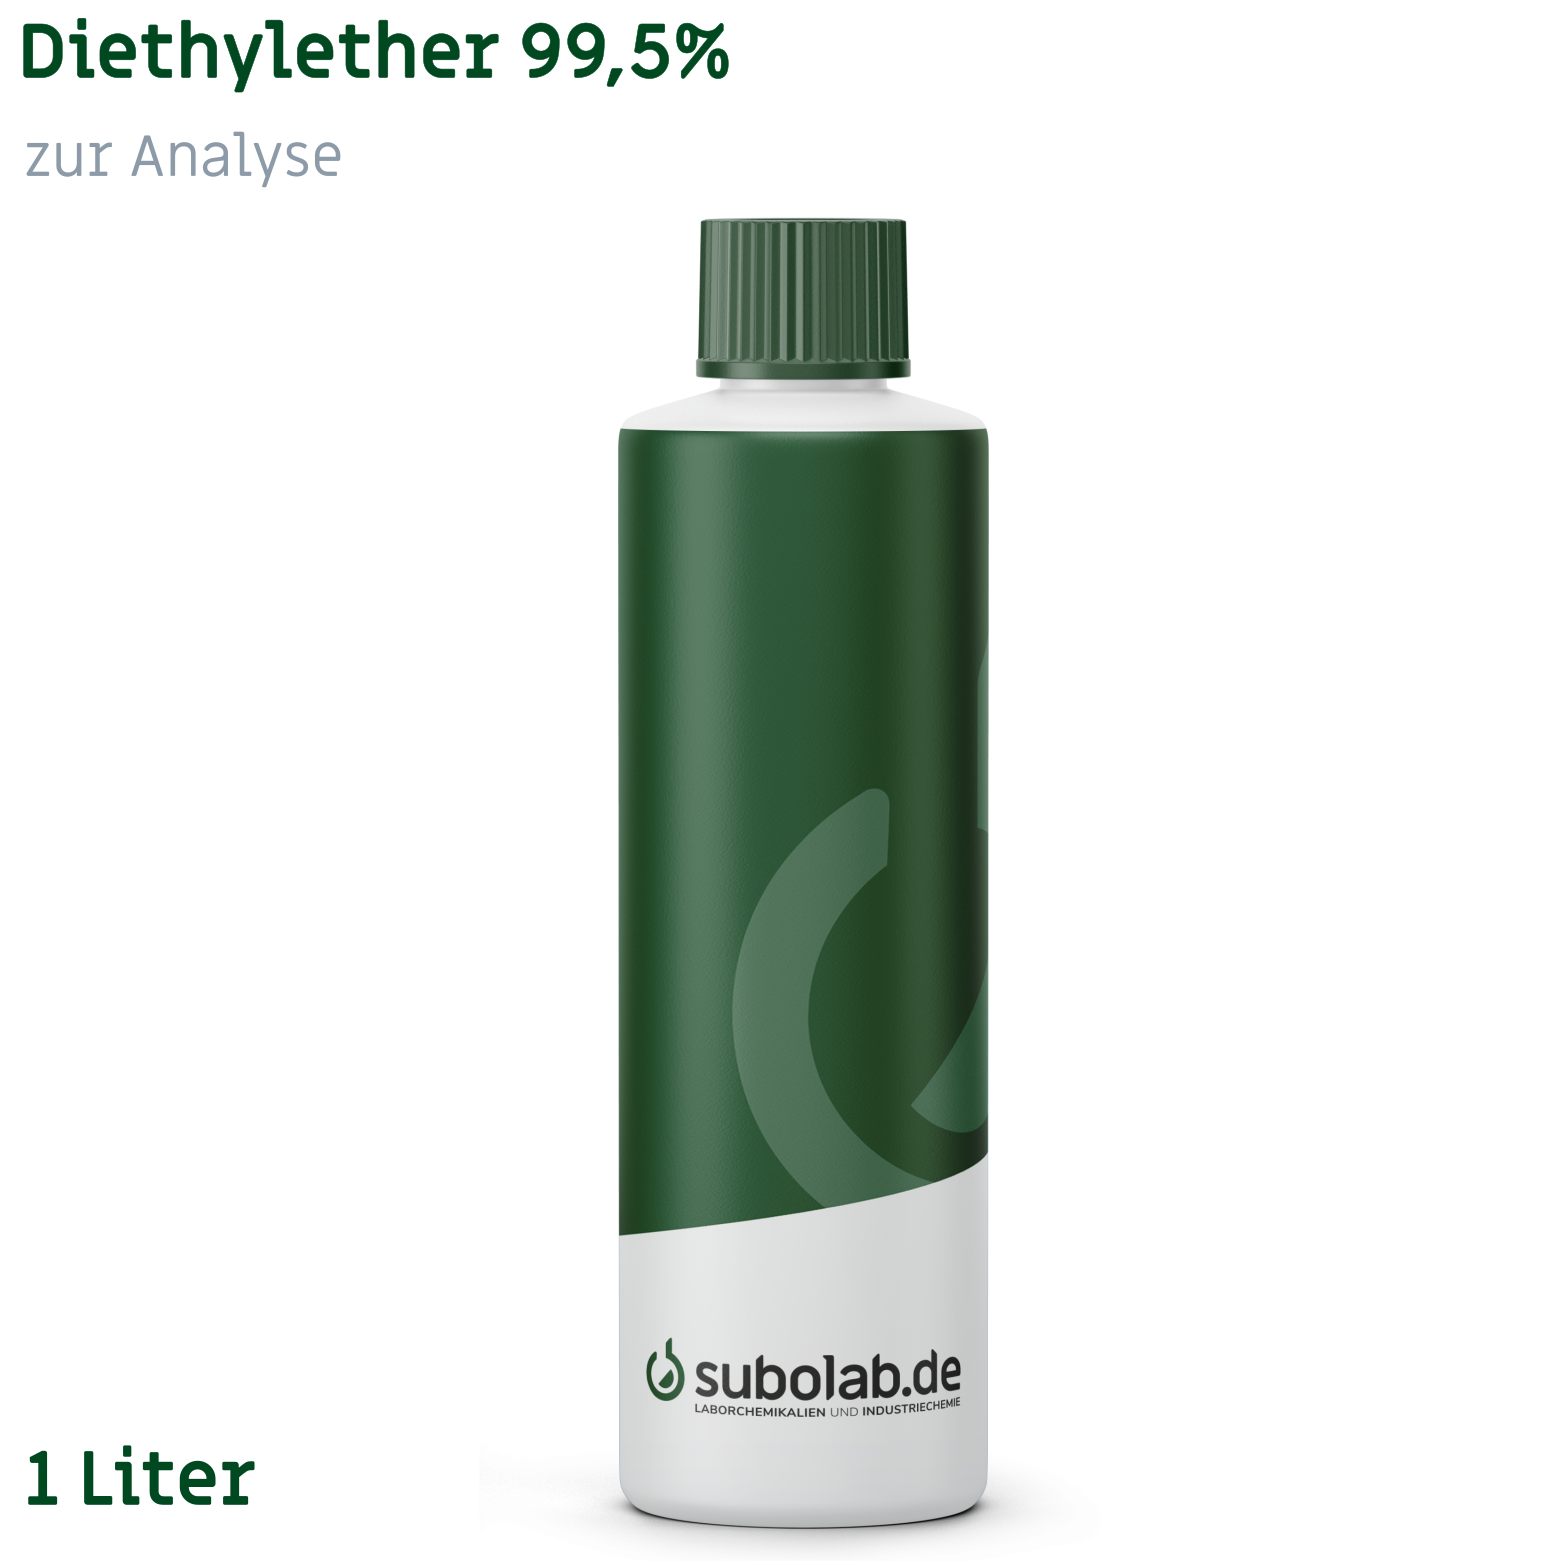 Bild von Diethylether 99,5% zur Analyse (1 Liter)